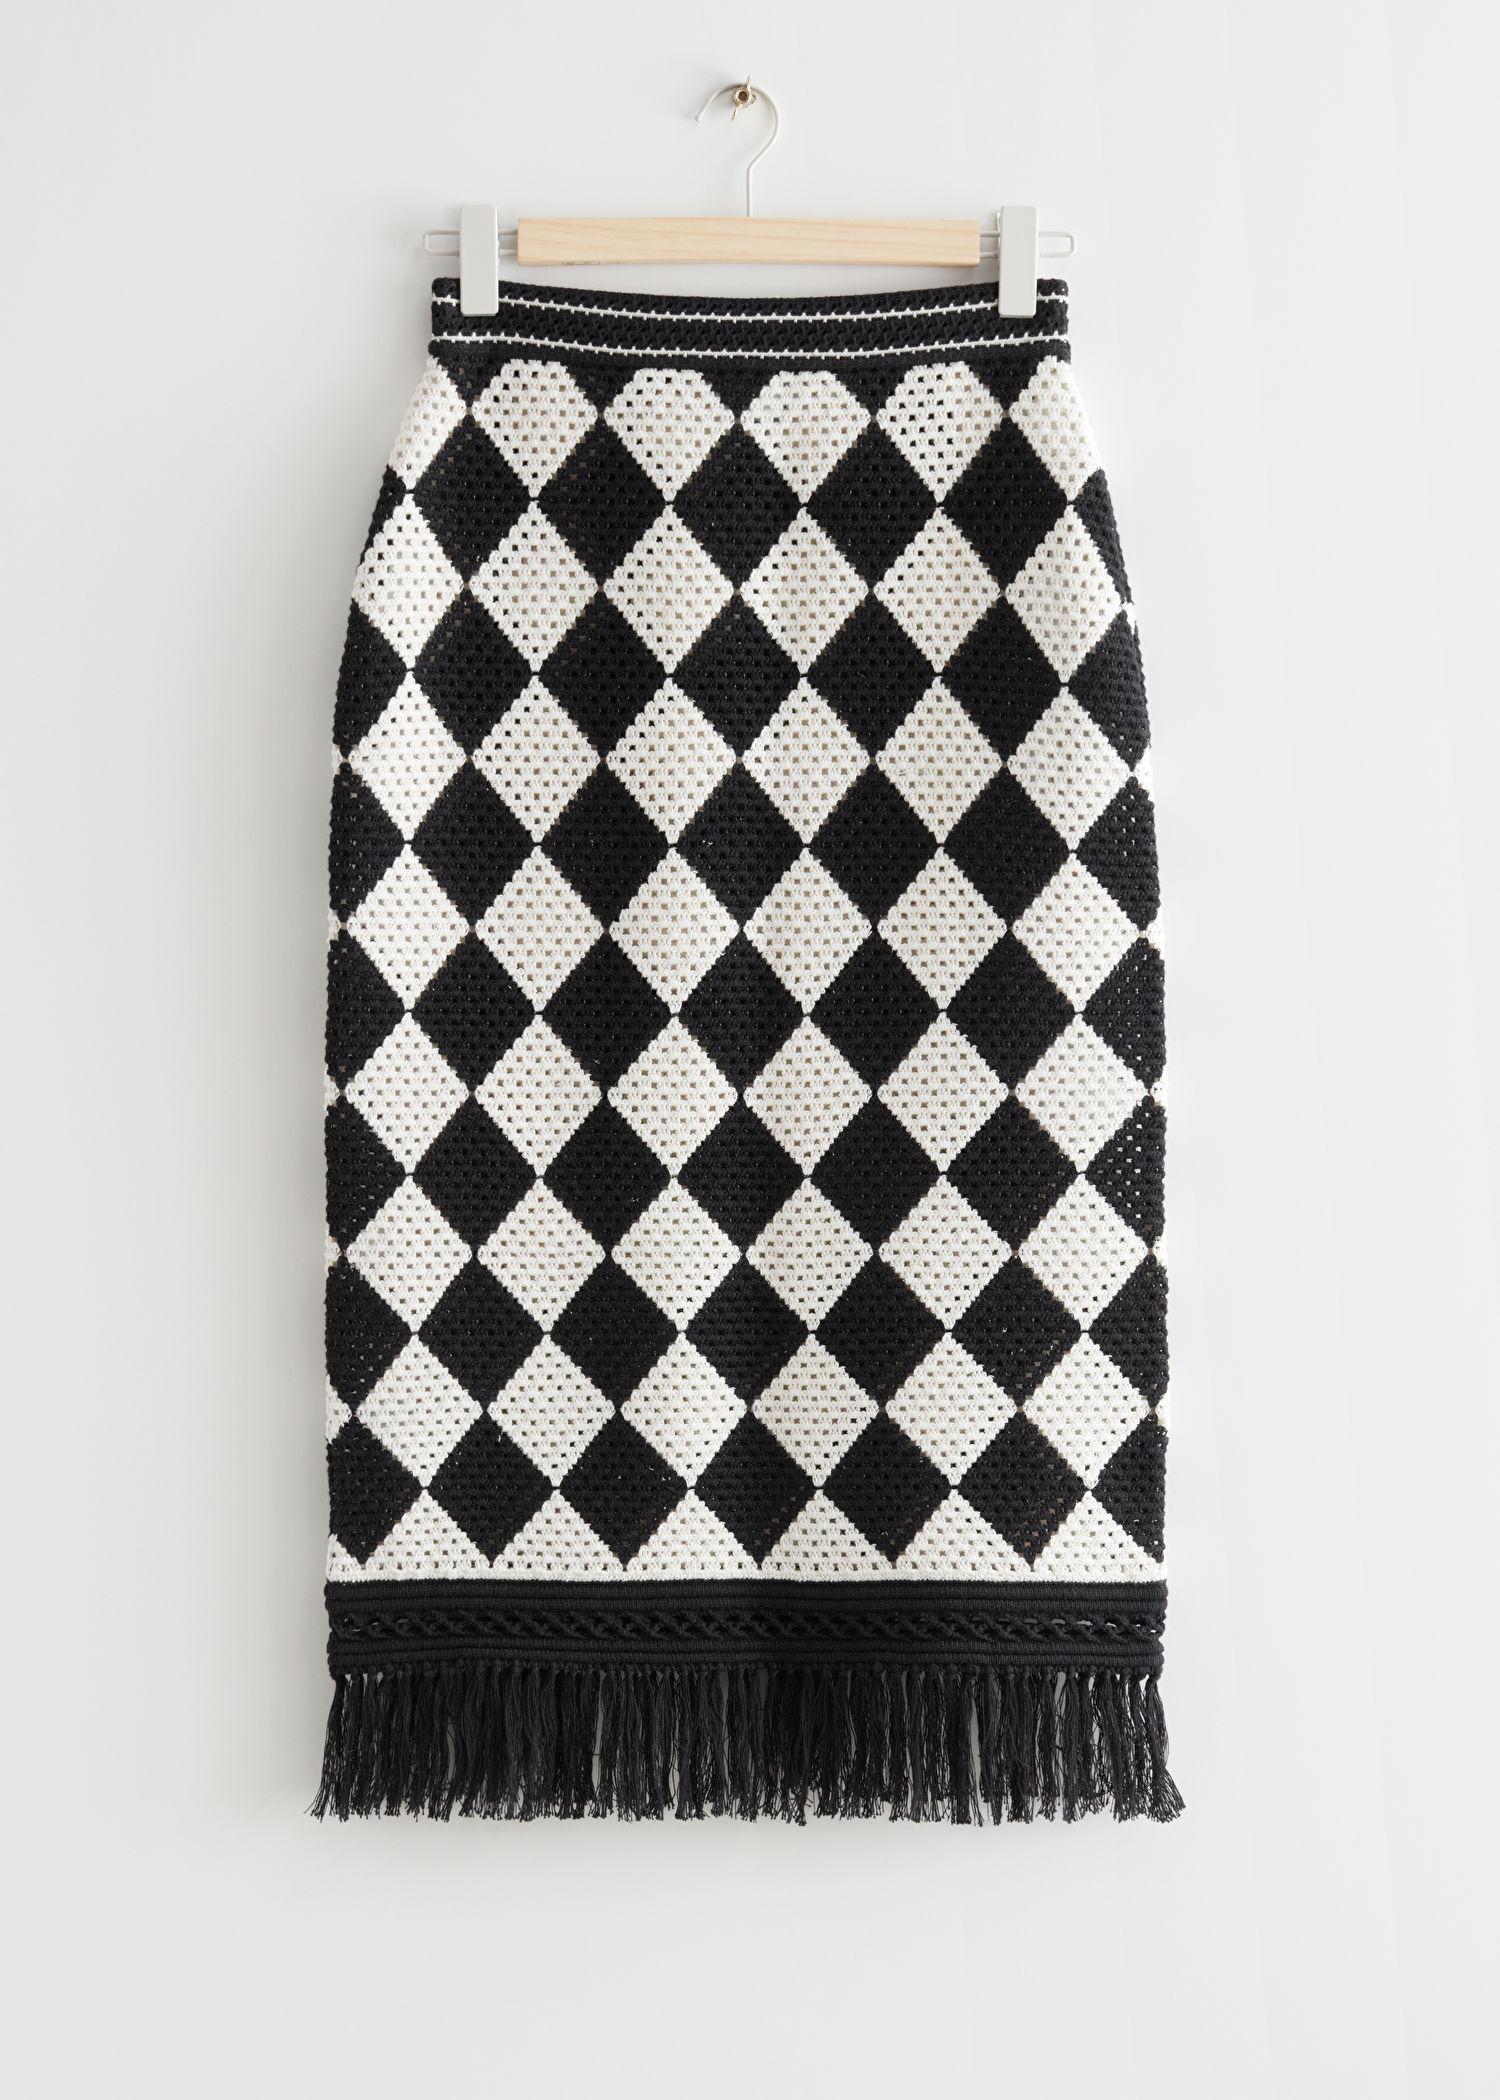 & Other Stories Harlequin Crochet Midi Skirt in Black | Lyst UK